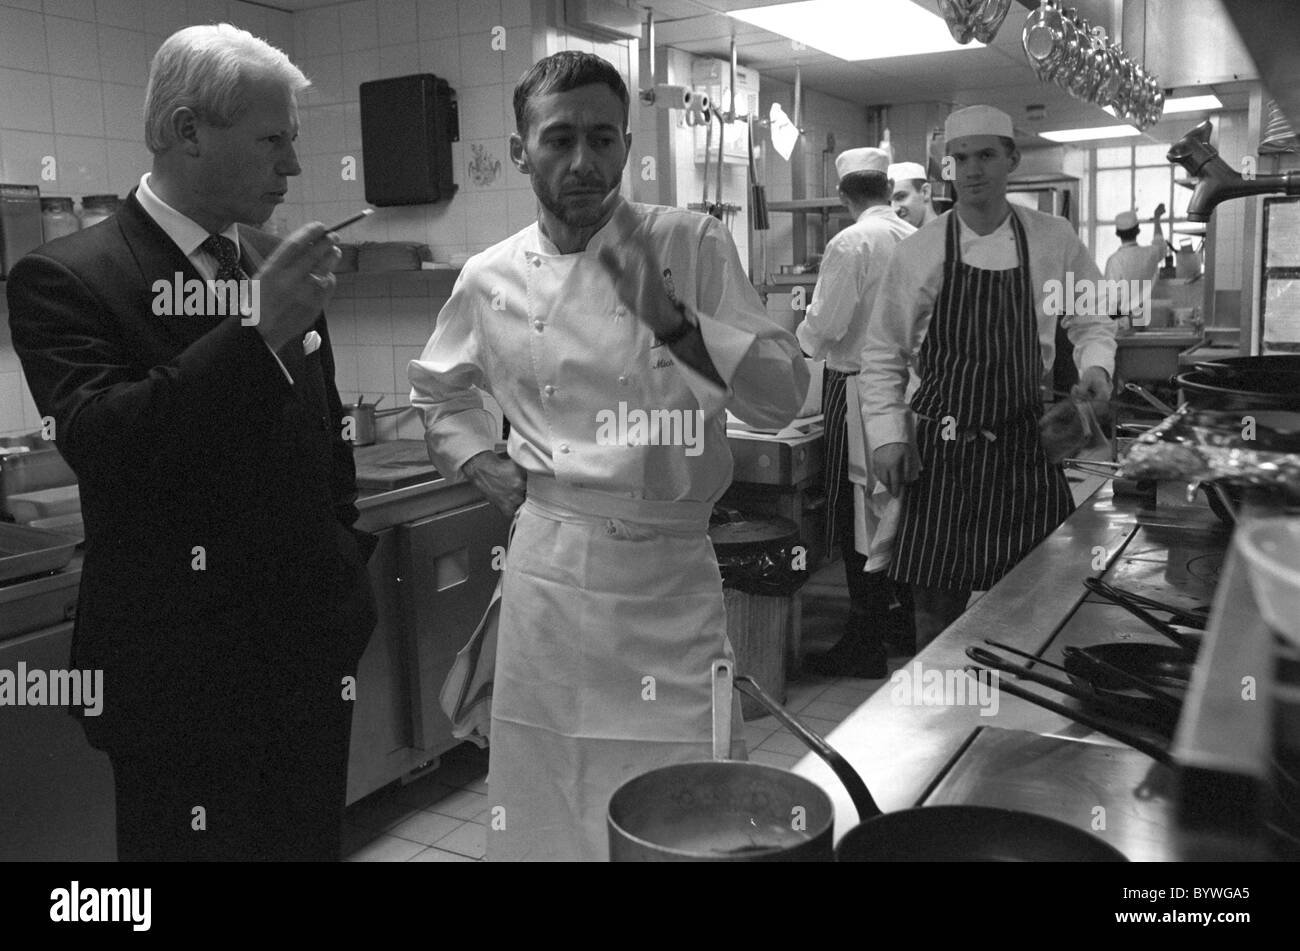 Michel Roux jr at Le Gavroche discussing the menu with Silvano Giraldin Stock Photo